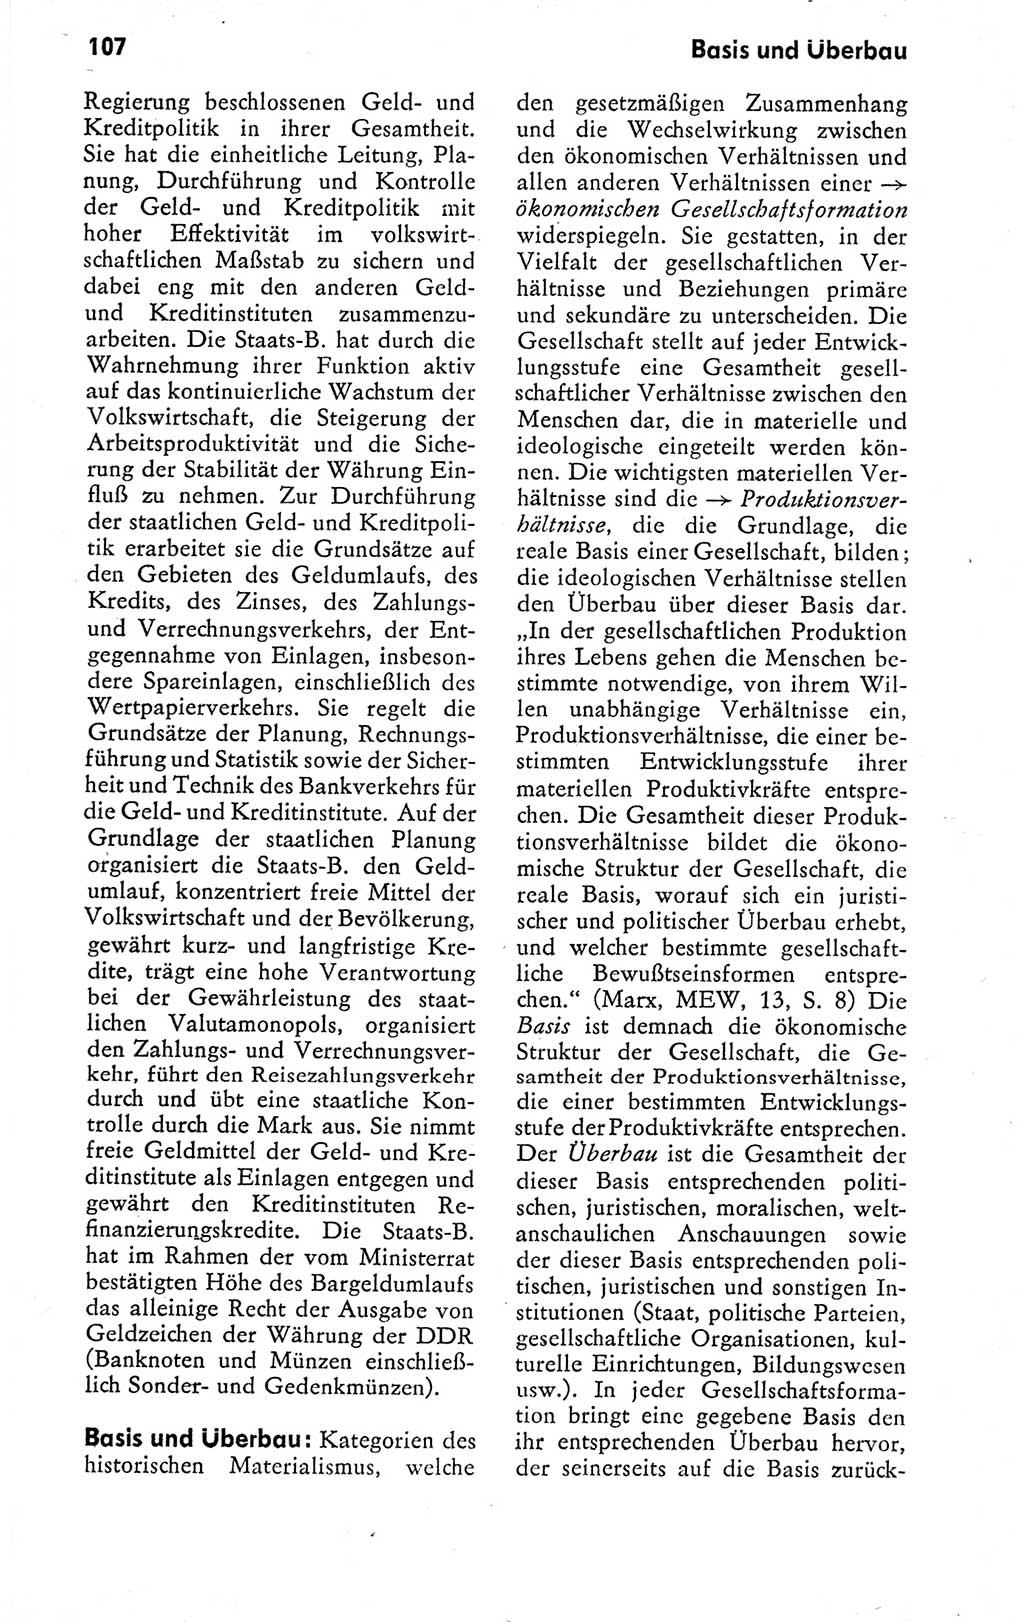 Kleines politisches Wörterbuch [Deutsche Demokratische Republik (DDR)] 1978, Seite 107 (Kl. pol. Wb. DDR 1978, S. 107)